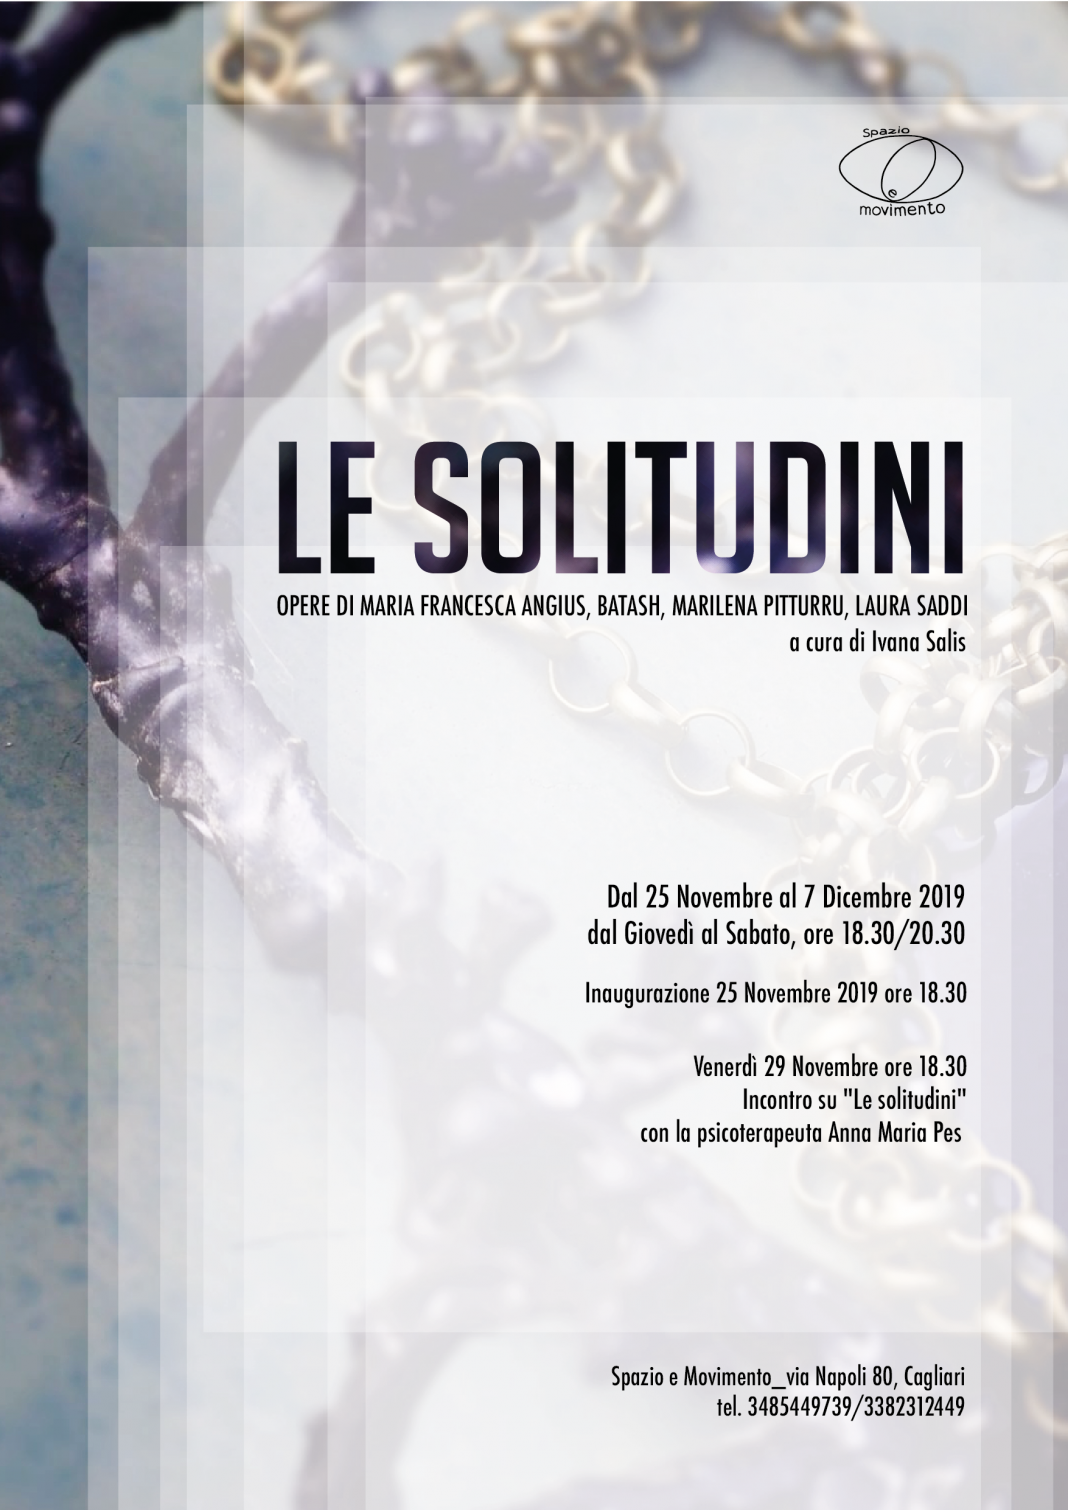 Le solitudinihttps://www.exibart.com/repository/media/2019/11/le-solitudini-locandina-web-1068x1510.png